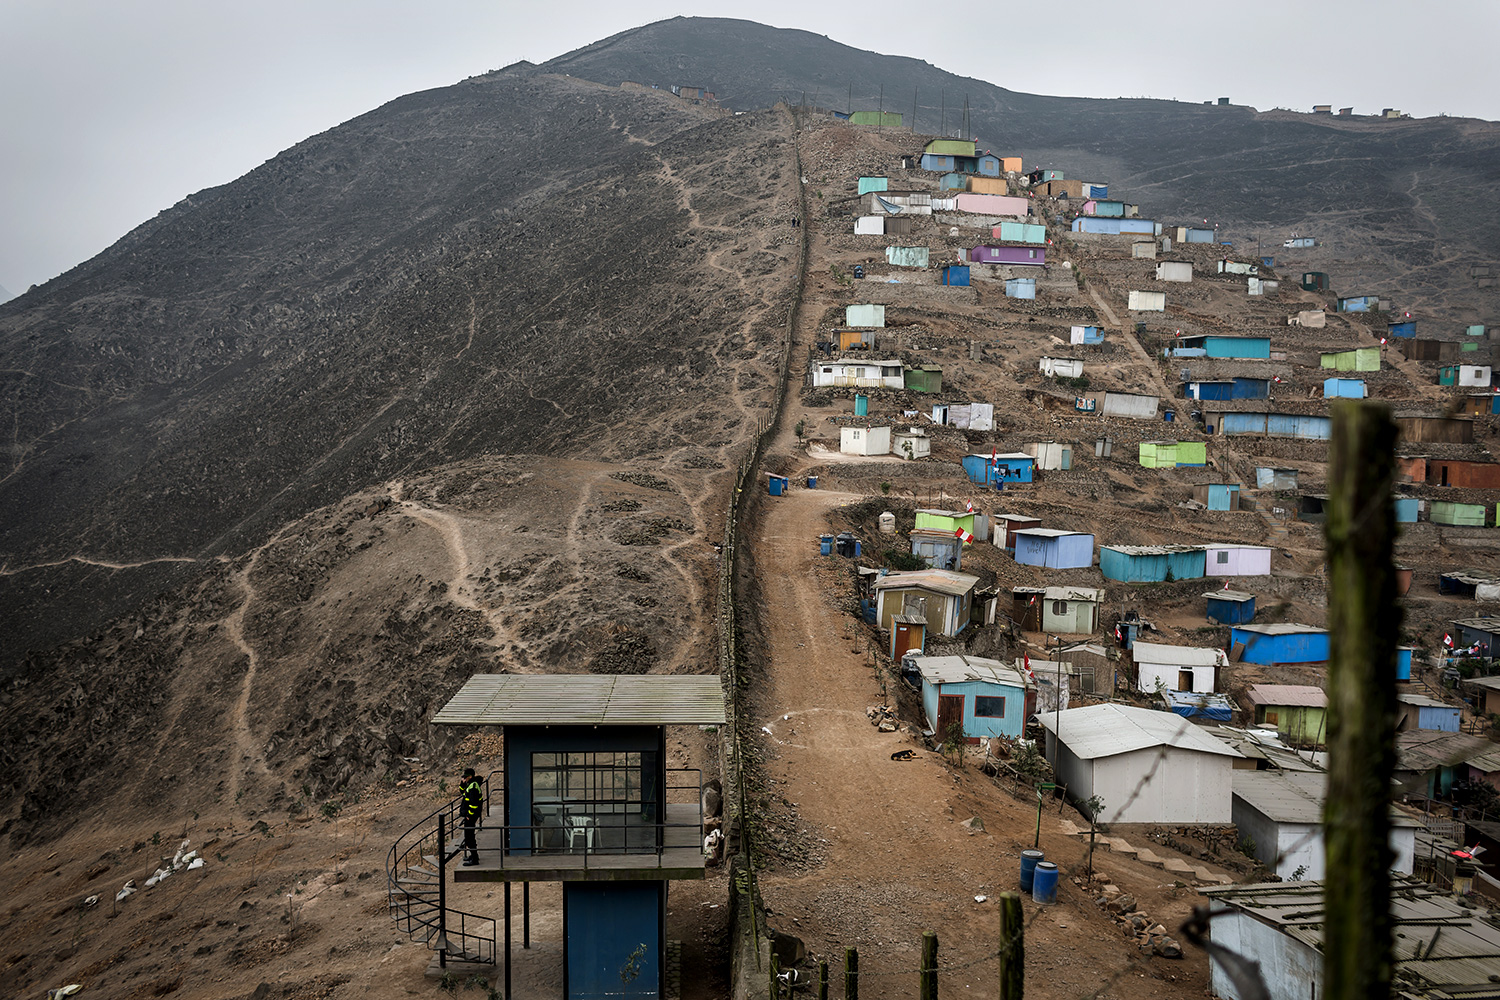 Muro que separa região pobre de rica em Lima, no Peru; barreiras que serpenteiam os morros de Lima somam 10 km de extensão